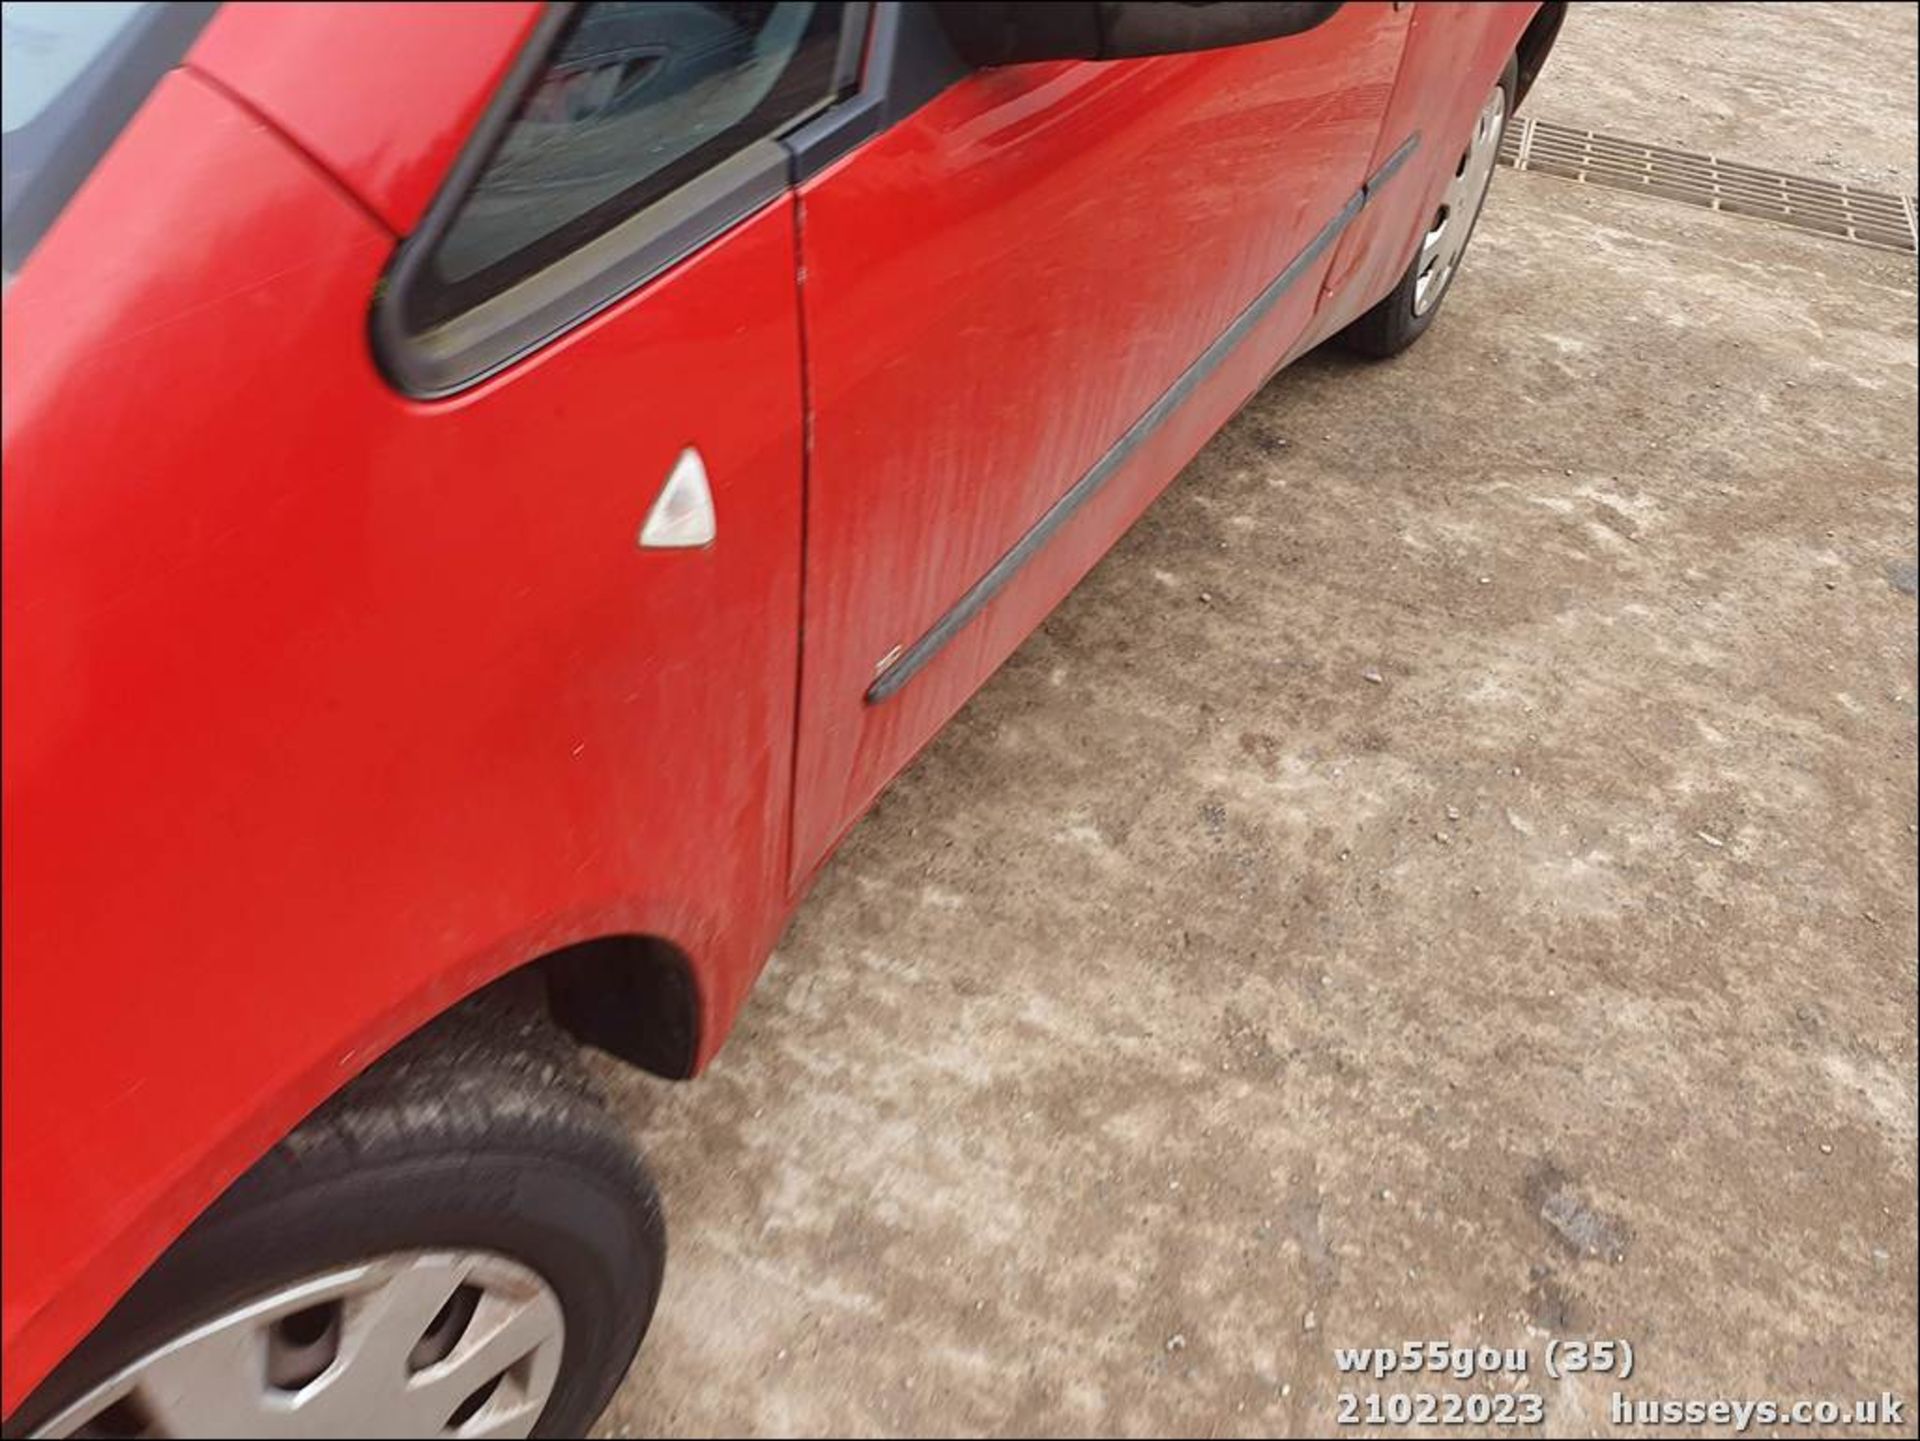 06/55 MITSUBISHI COLT RED - 1124cc 3dr Hatchback (Red) - Image 35 of 48